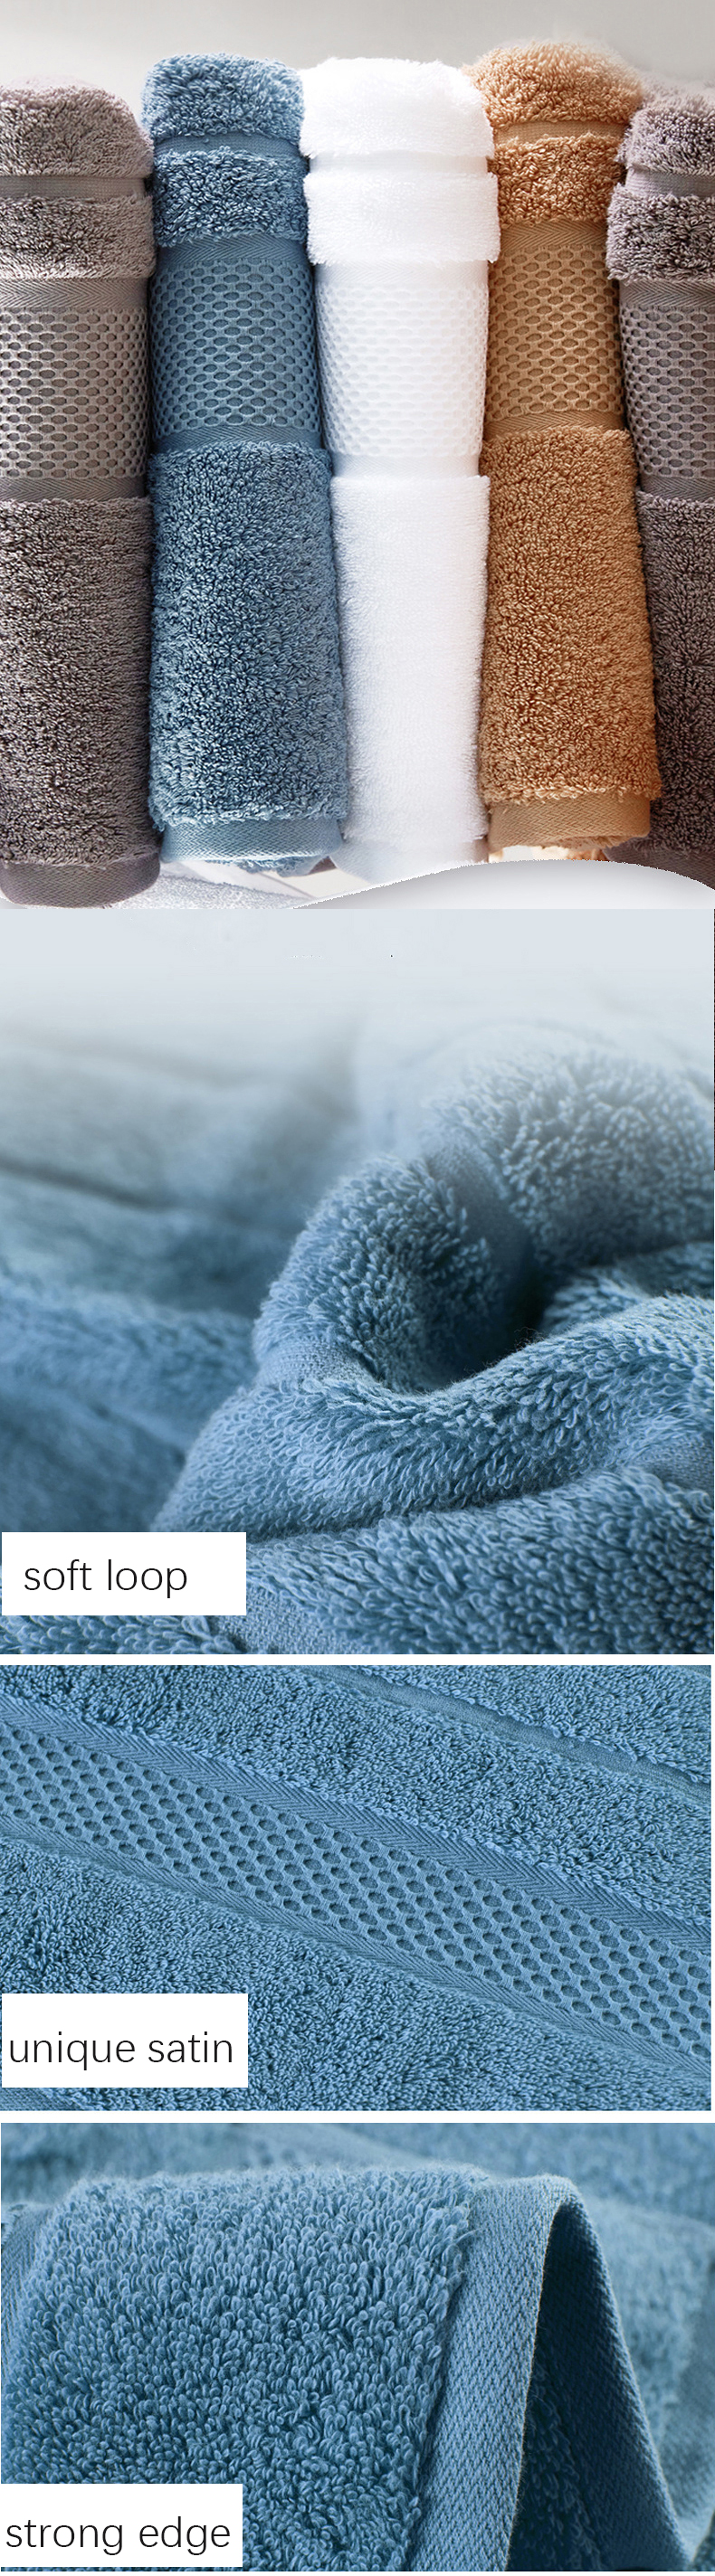 Luxury Cotton Soft Bath Face Towels Set